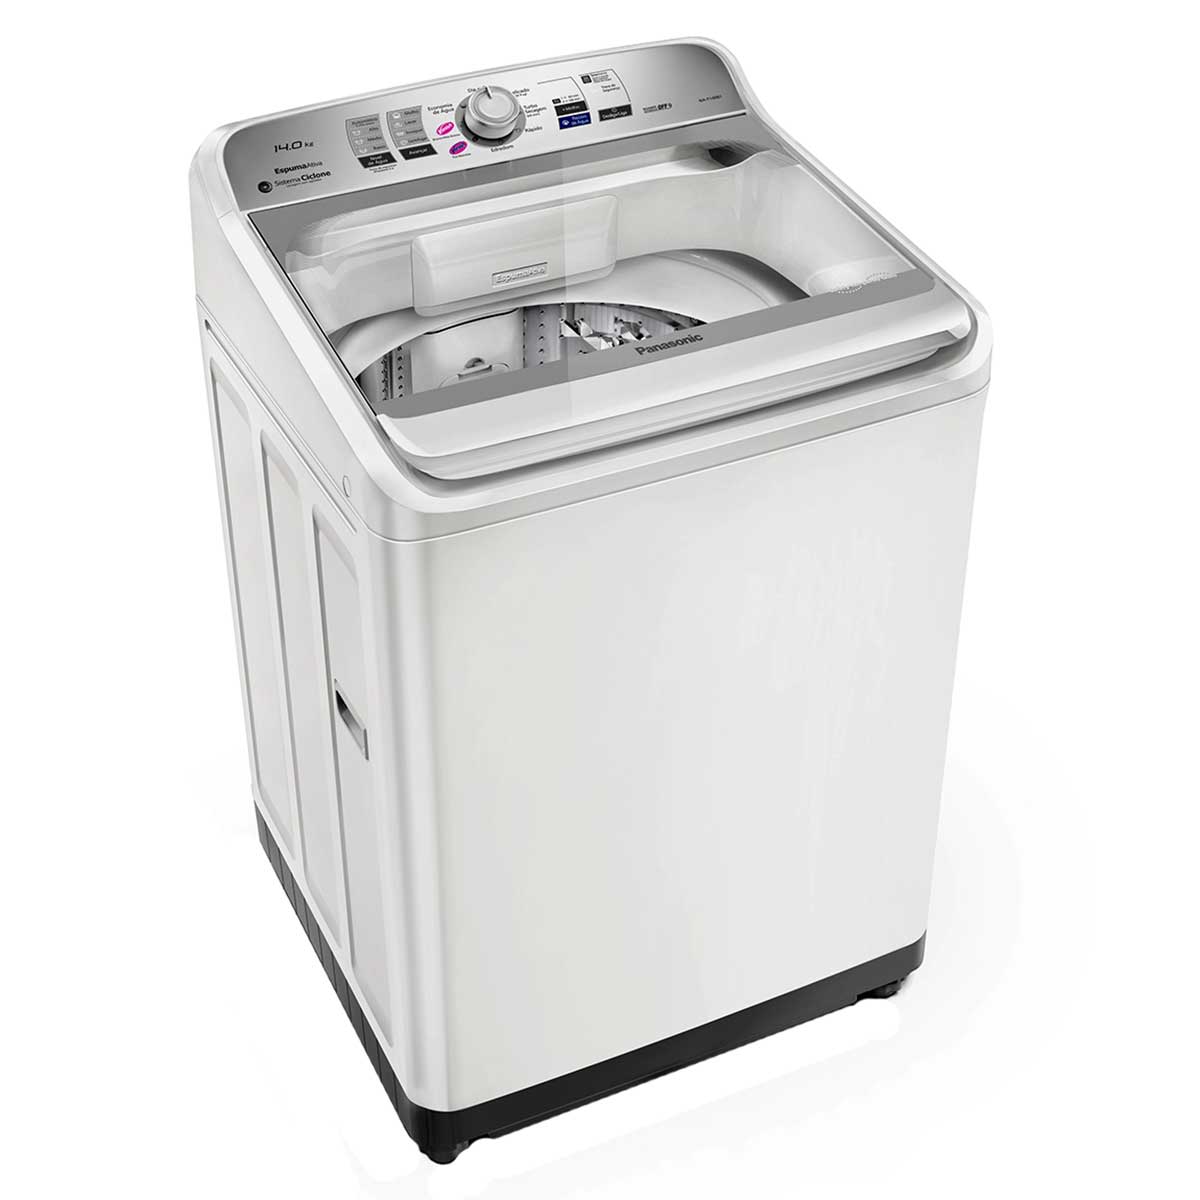 lavadora-panasonic-f140b1w-14kg-b-220v-2.jpg